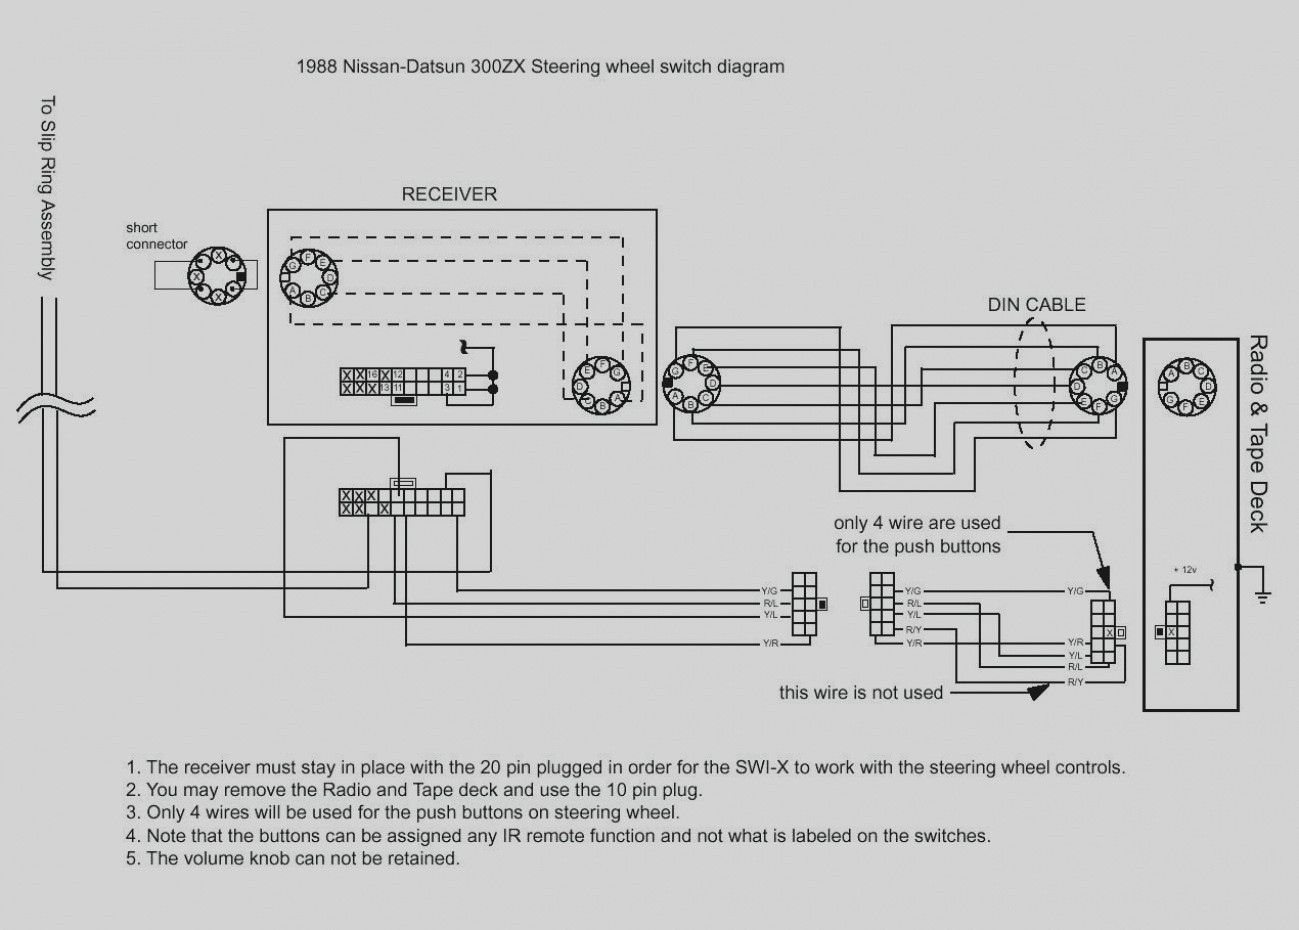 Kenwood Kdc 108 Wiring Diagram Free Picture | Wiring Diagram - Kenwood Kdc 108 Wiring Diagram